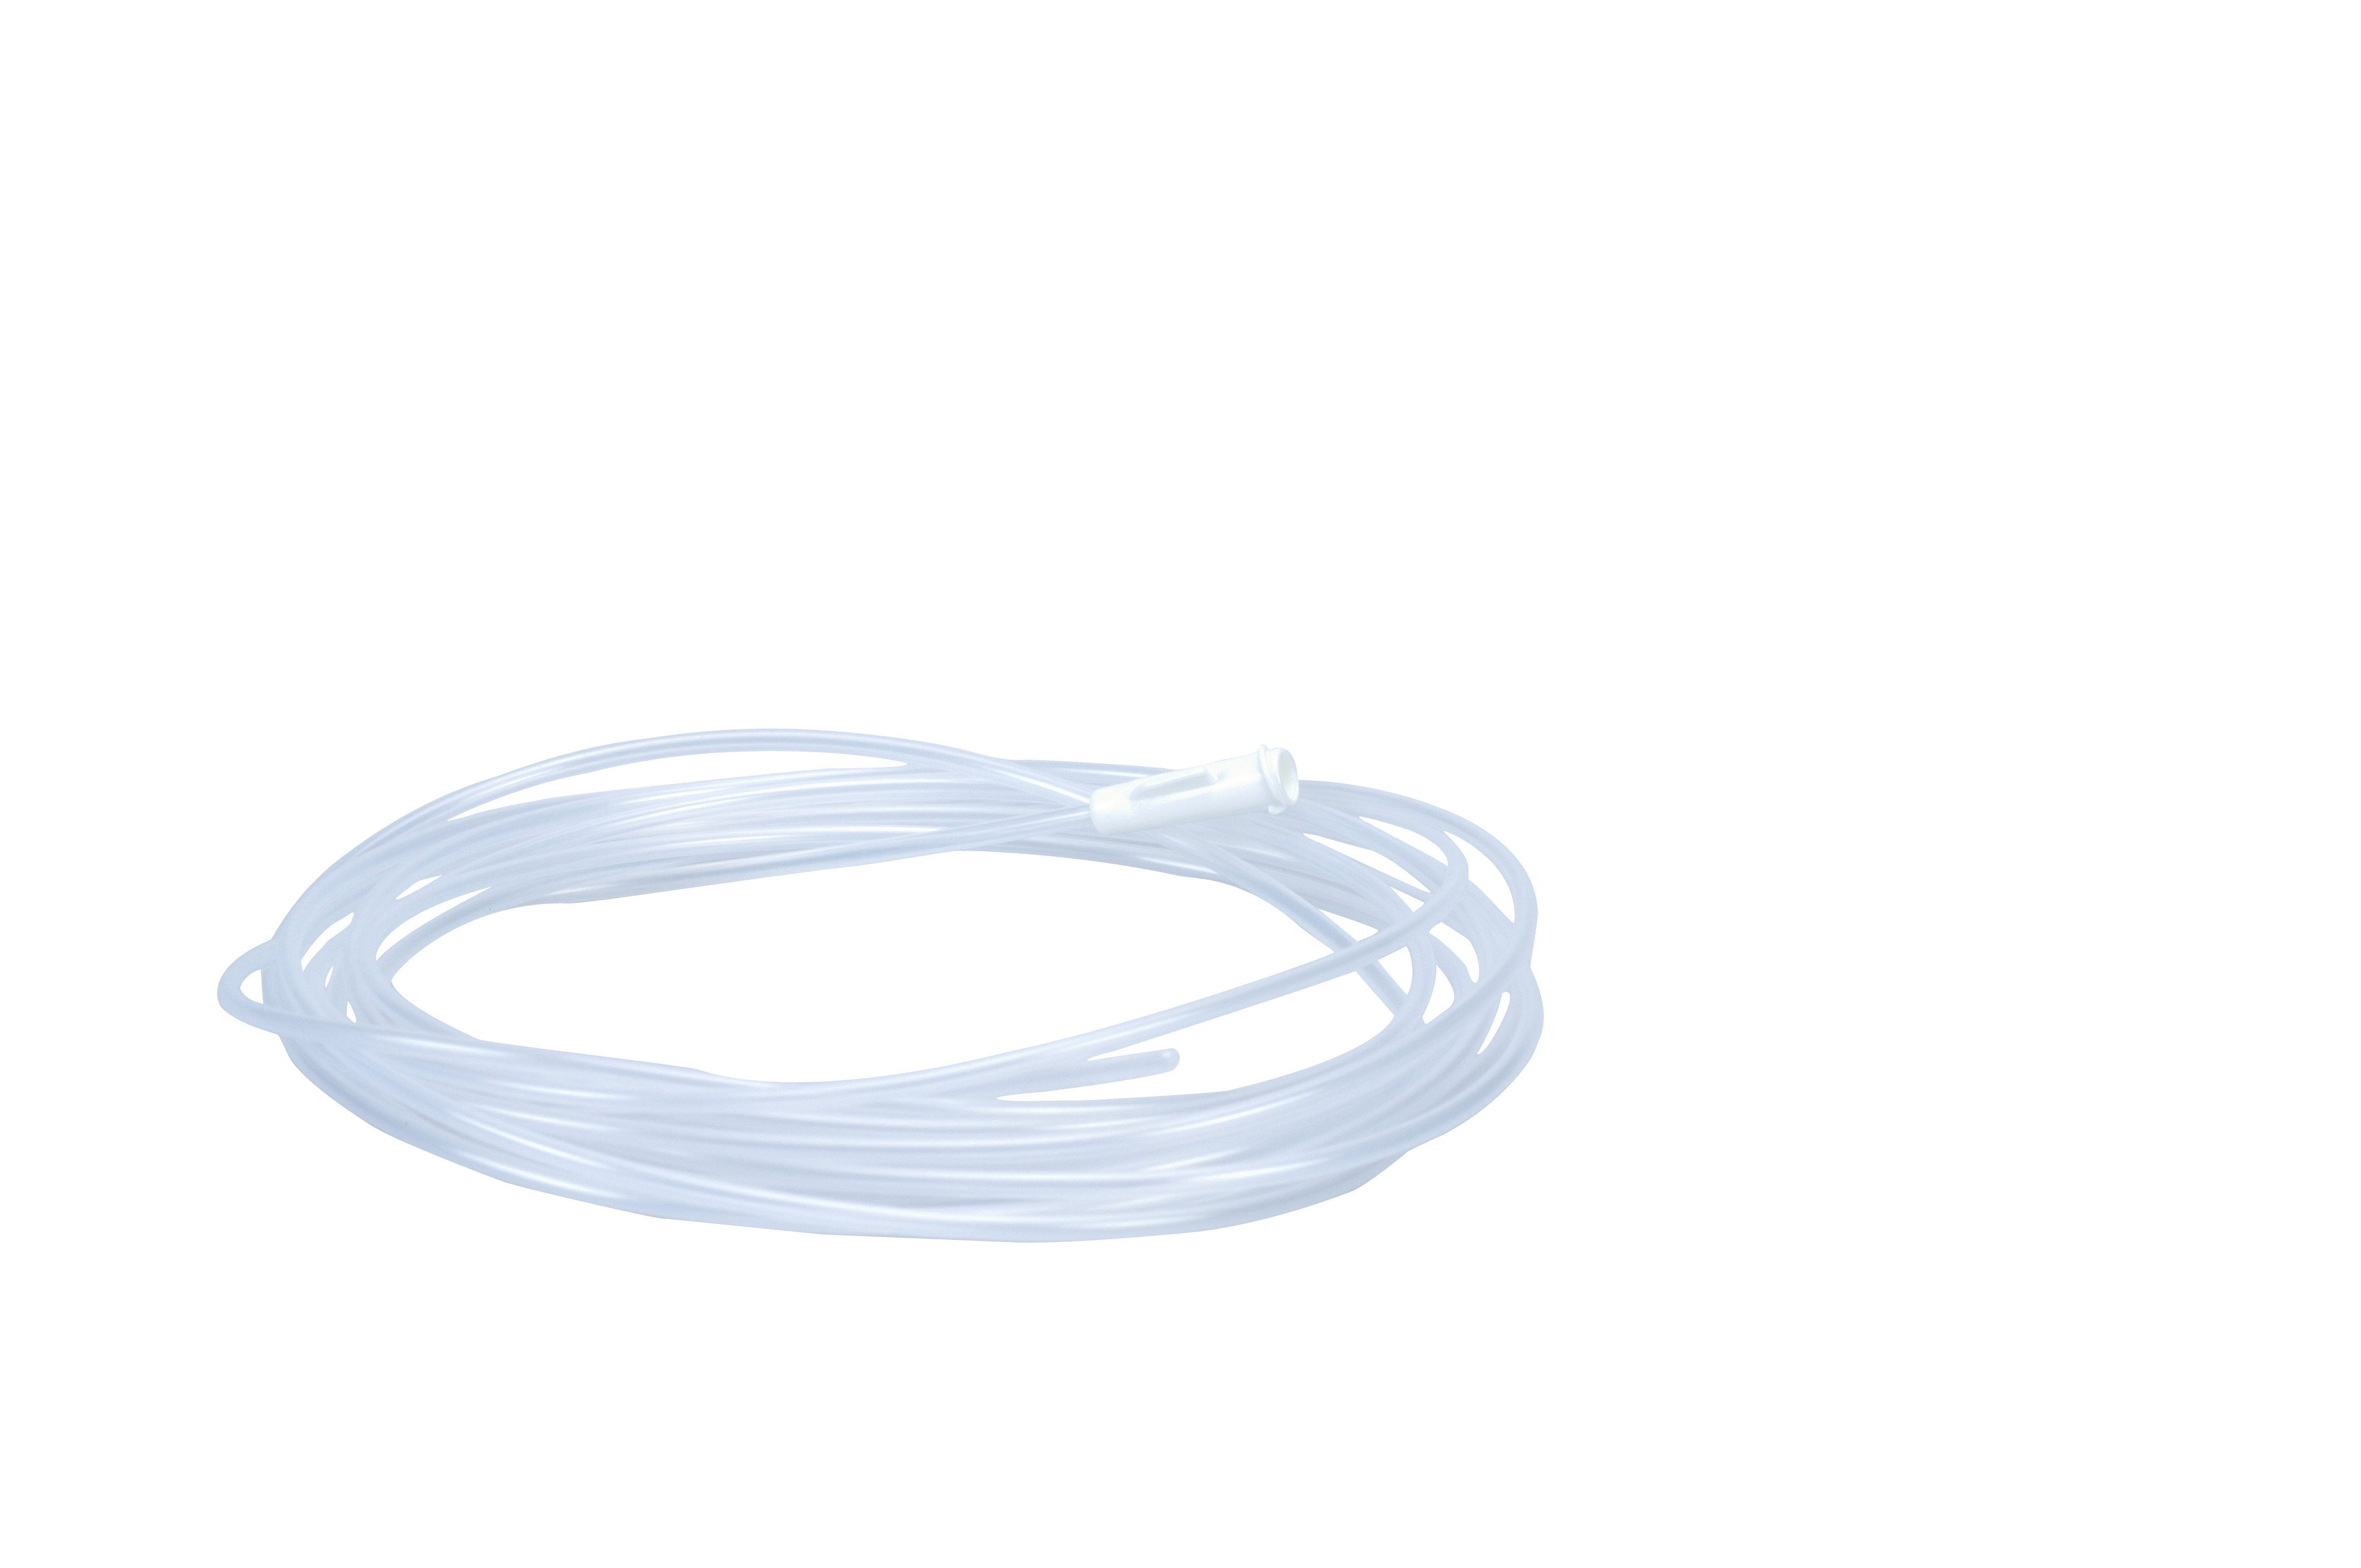 EQUIVET Gastroscope flushing catheter 2.3 mm x 400 cm, sterile